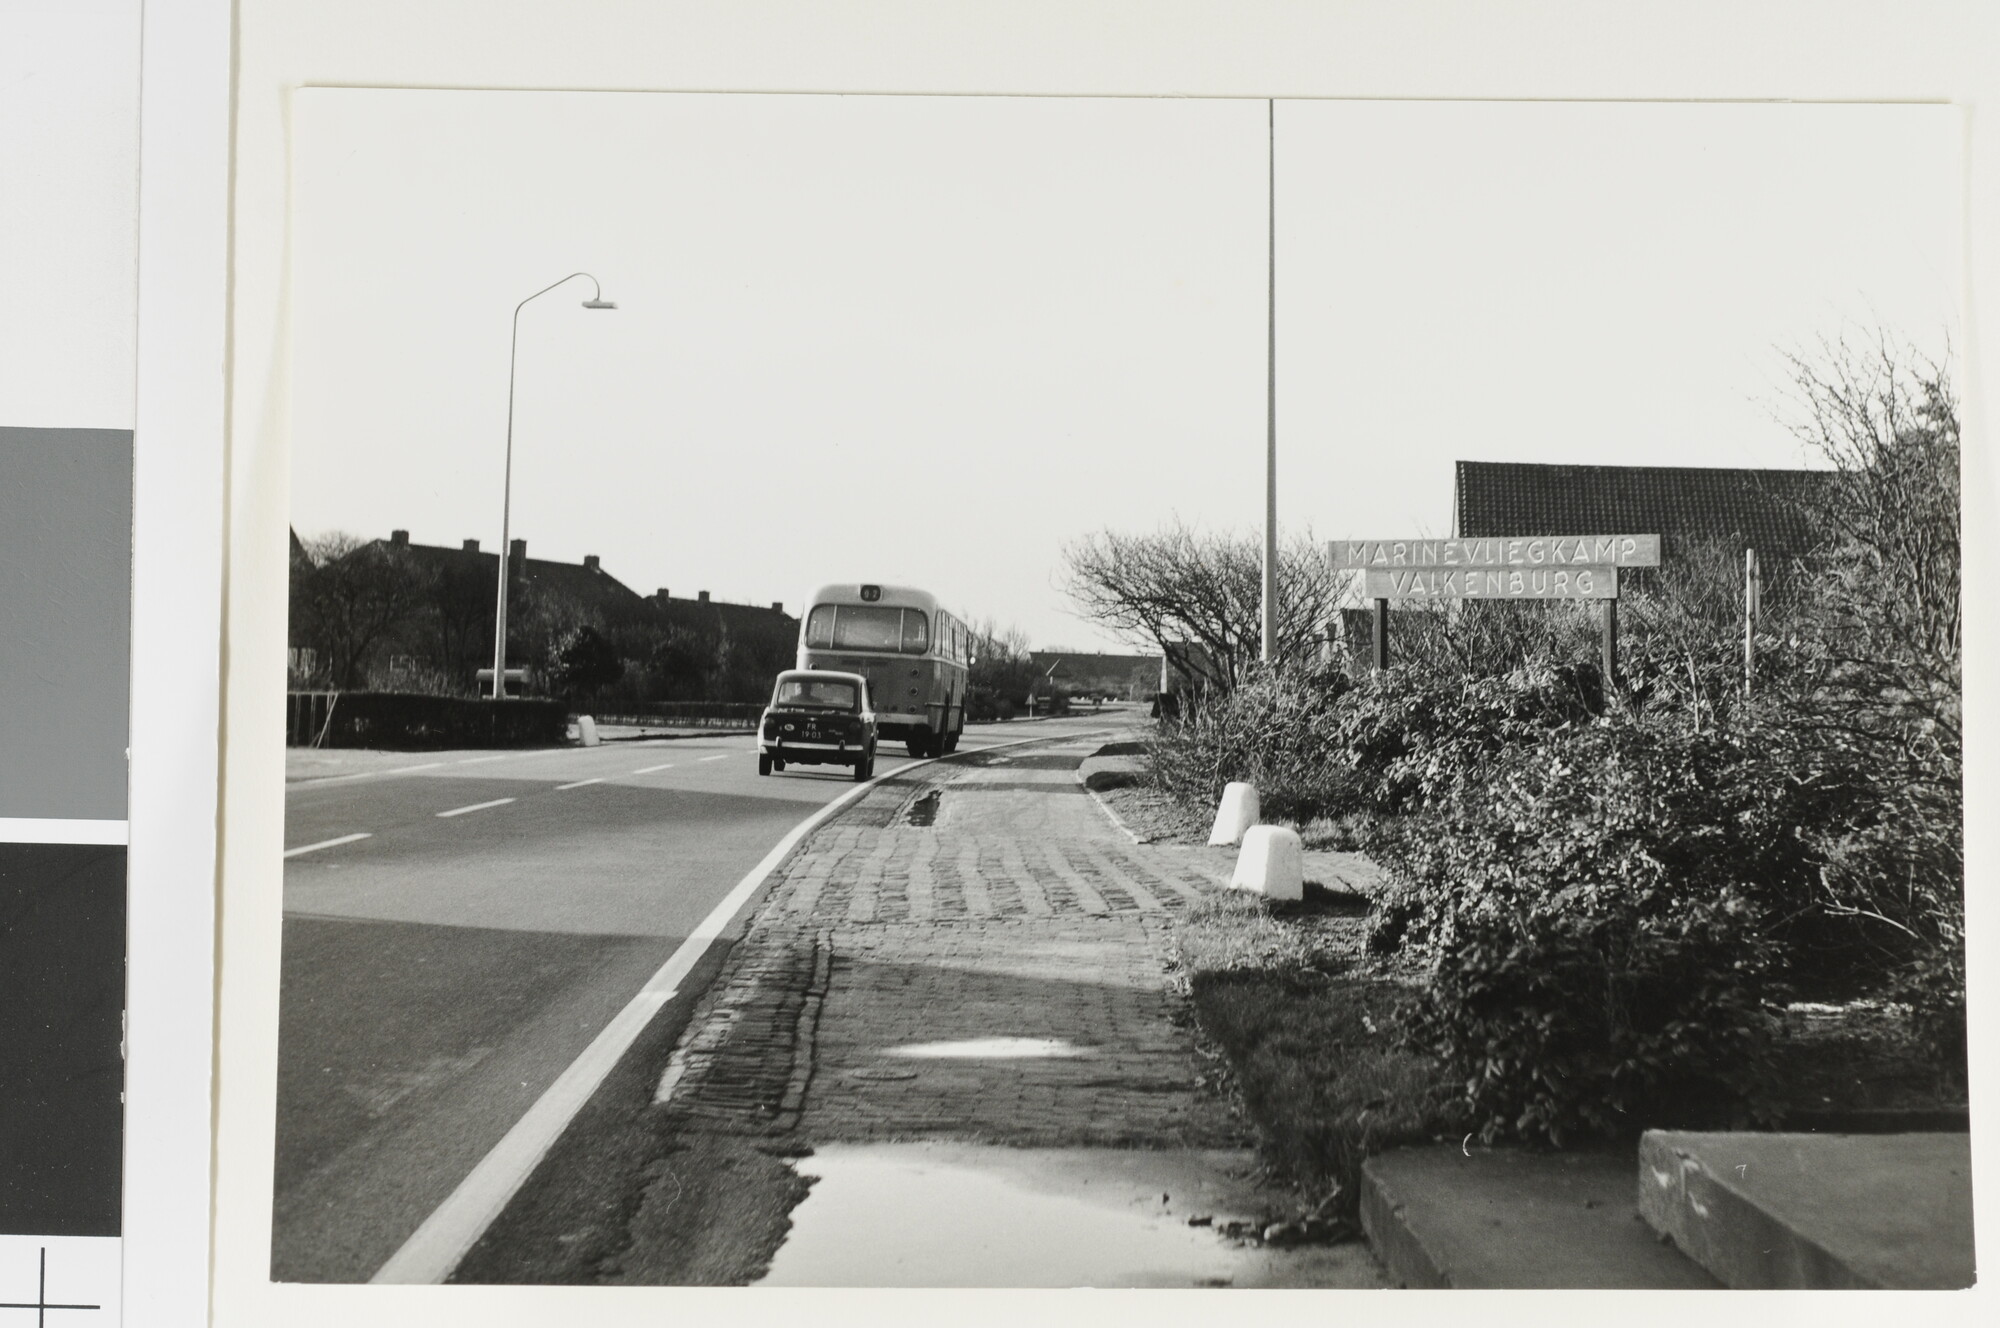 1992.1591; Rijksstraatweg tussen Wassenaar en Katwijk en het Marinevliegkamp [...]; foto